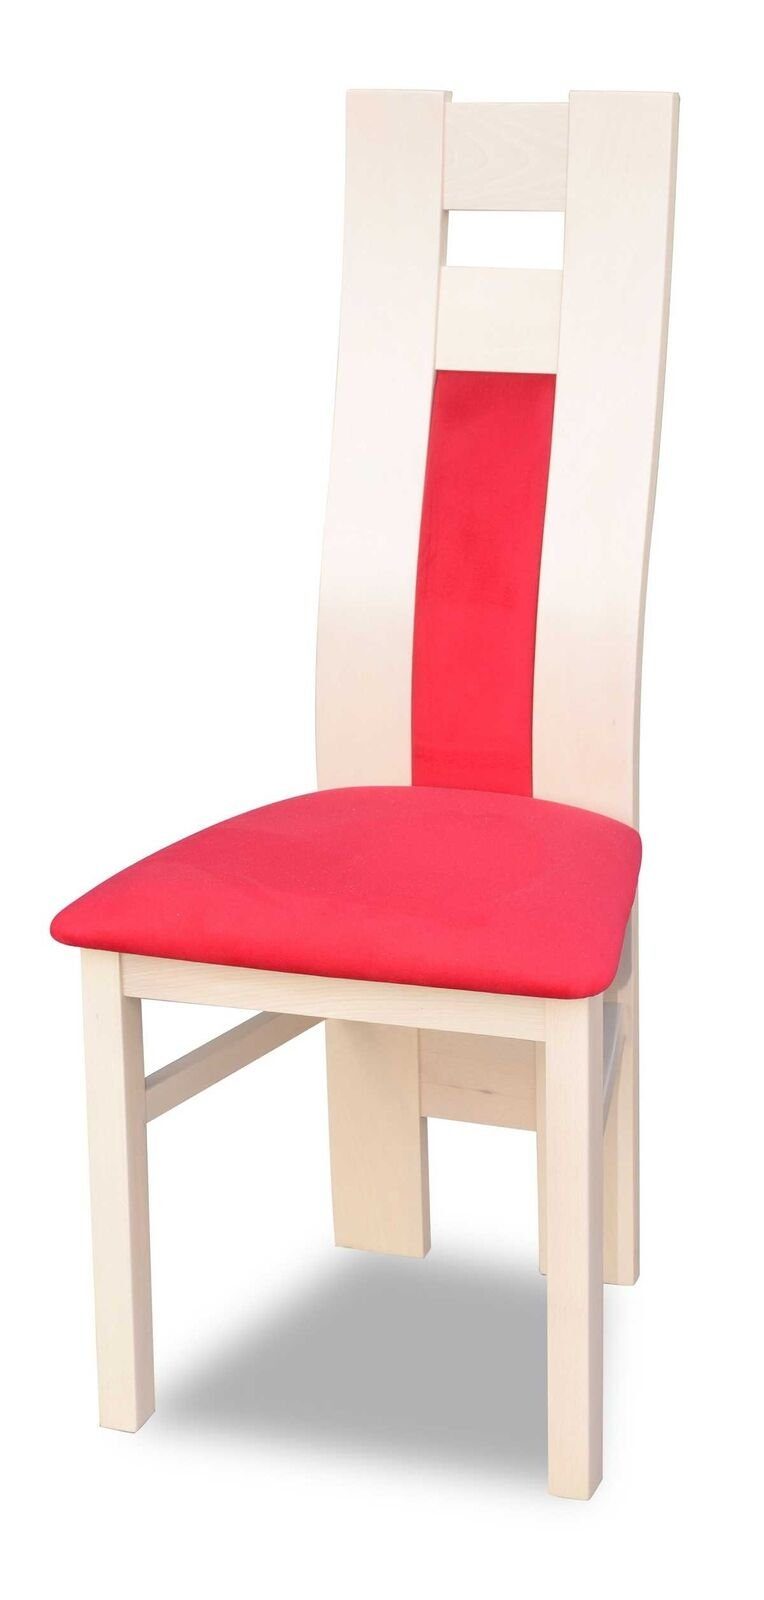 (1 Neu Stuhl Stuhl Polster JVmoebel Möbel Luxus Design Weib Esszimmerstuhl St) Einrichtung Stühle